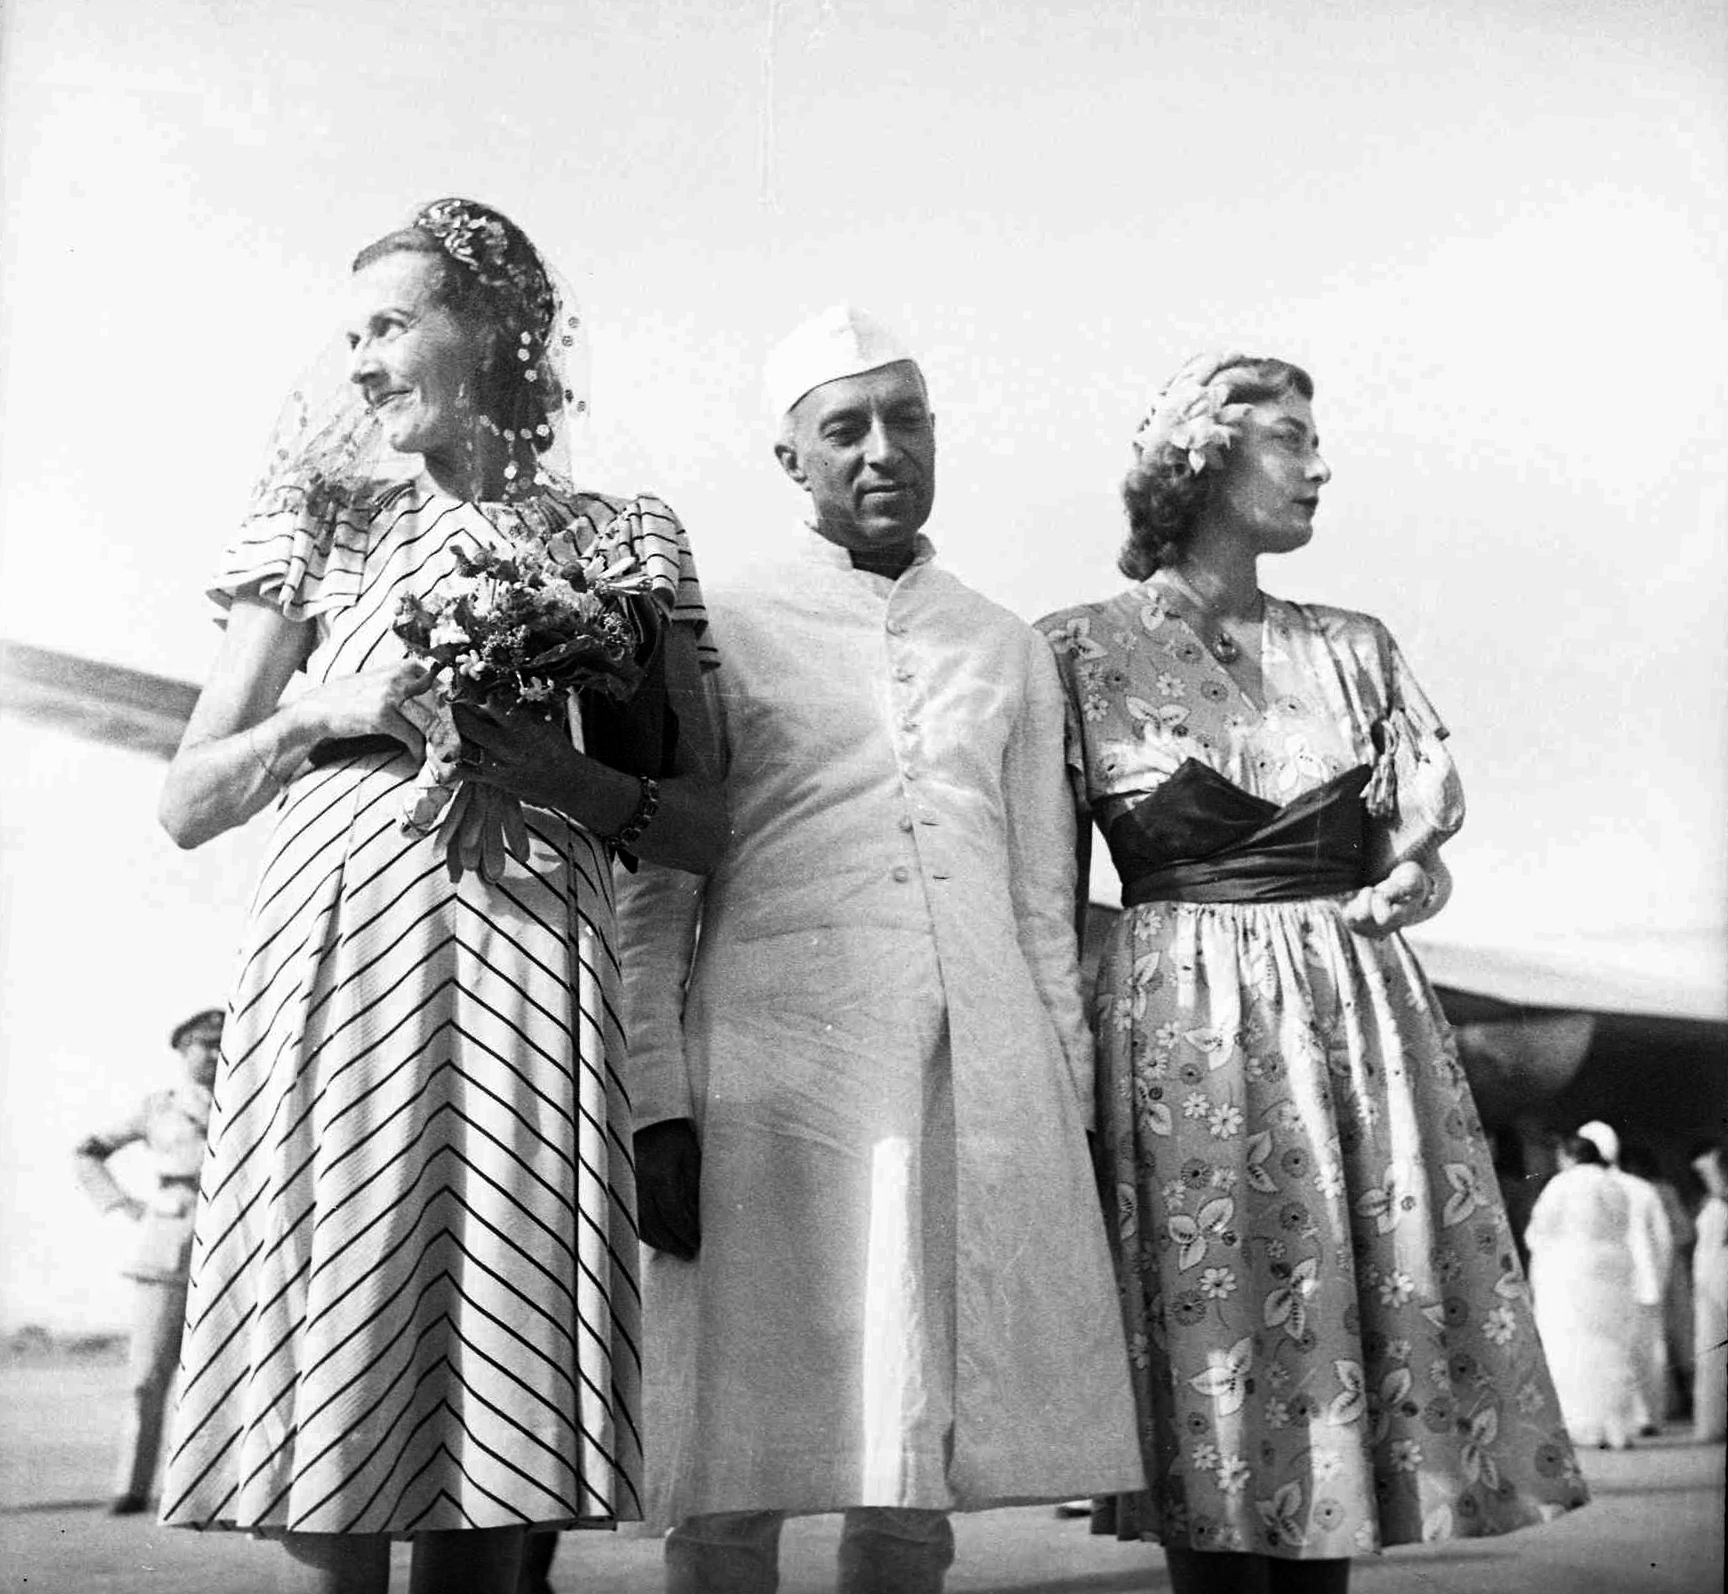 NEHRU WITH EDWINA AND PAMELA MOUNTABTTEN AT PALAM,1948.